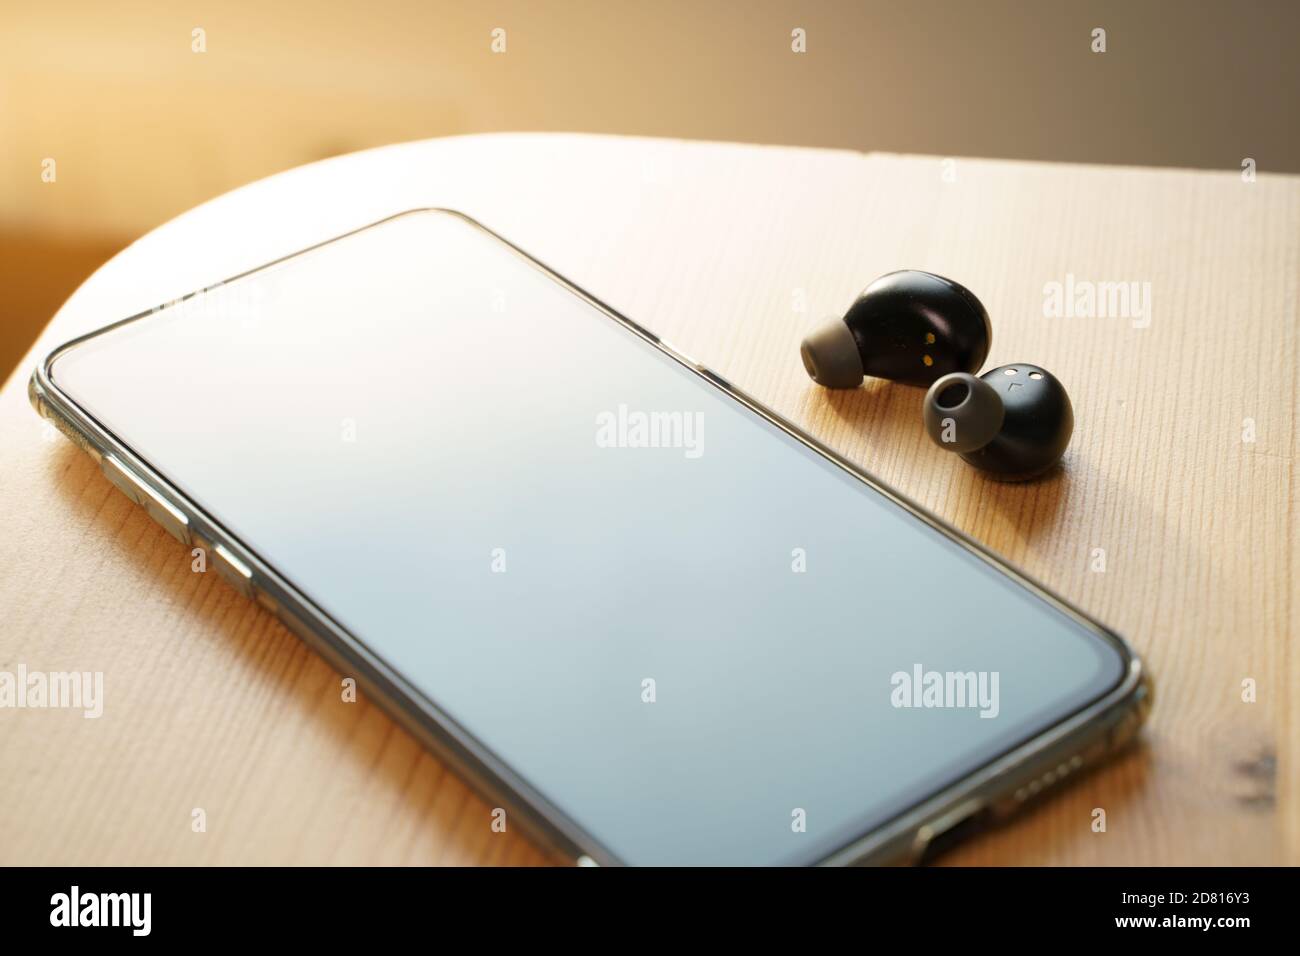 Auricolari wireless e uno smartphone su un tavolo di legno Foto Stock